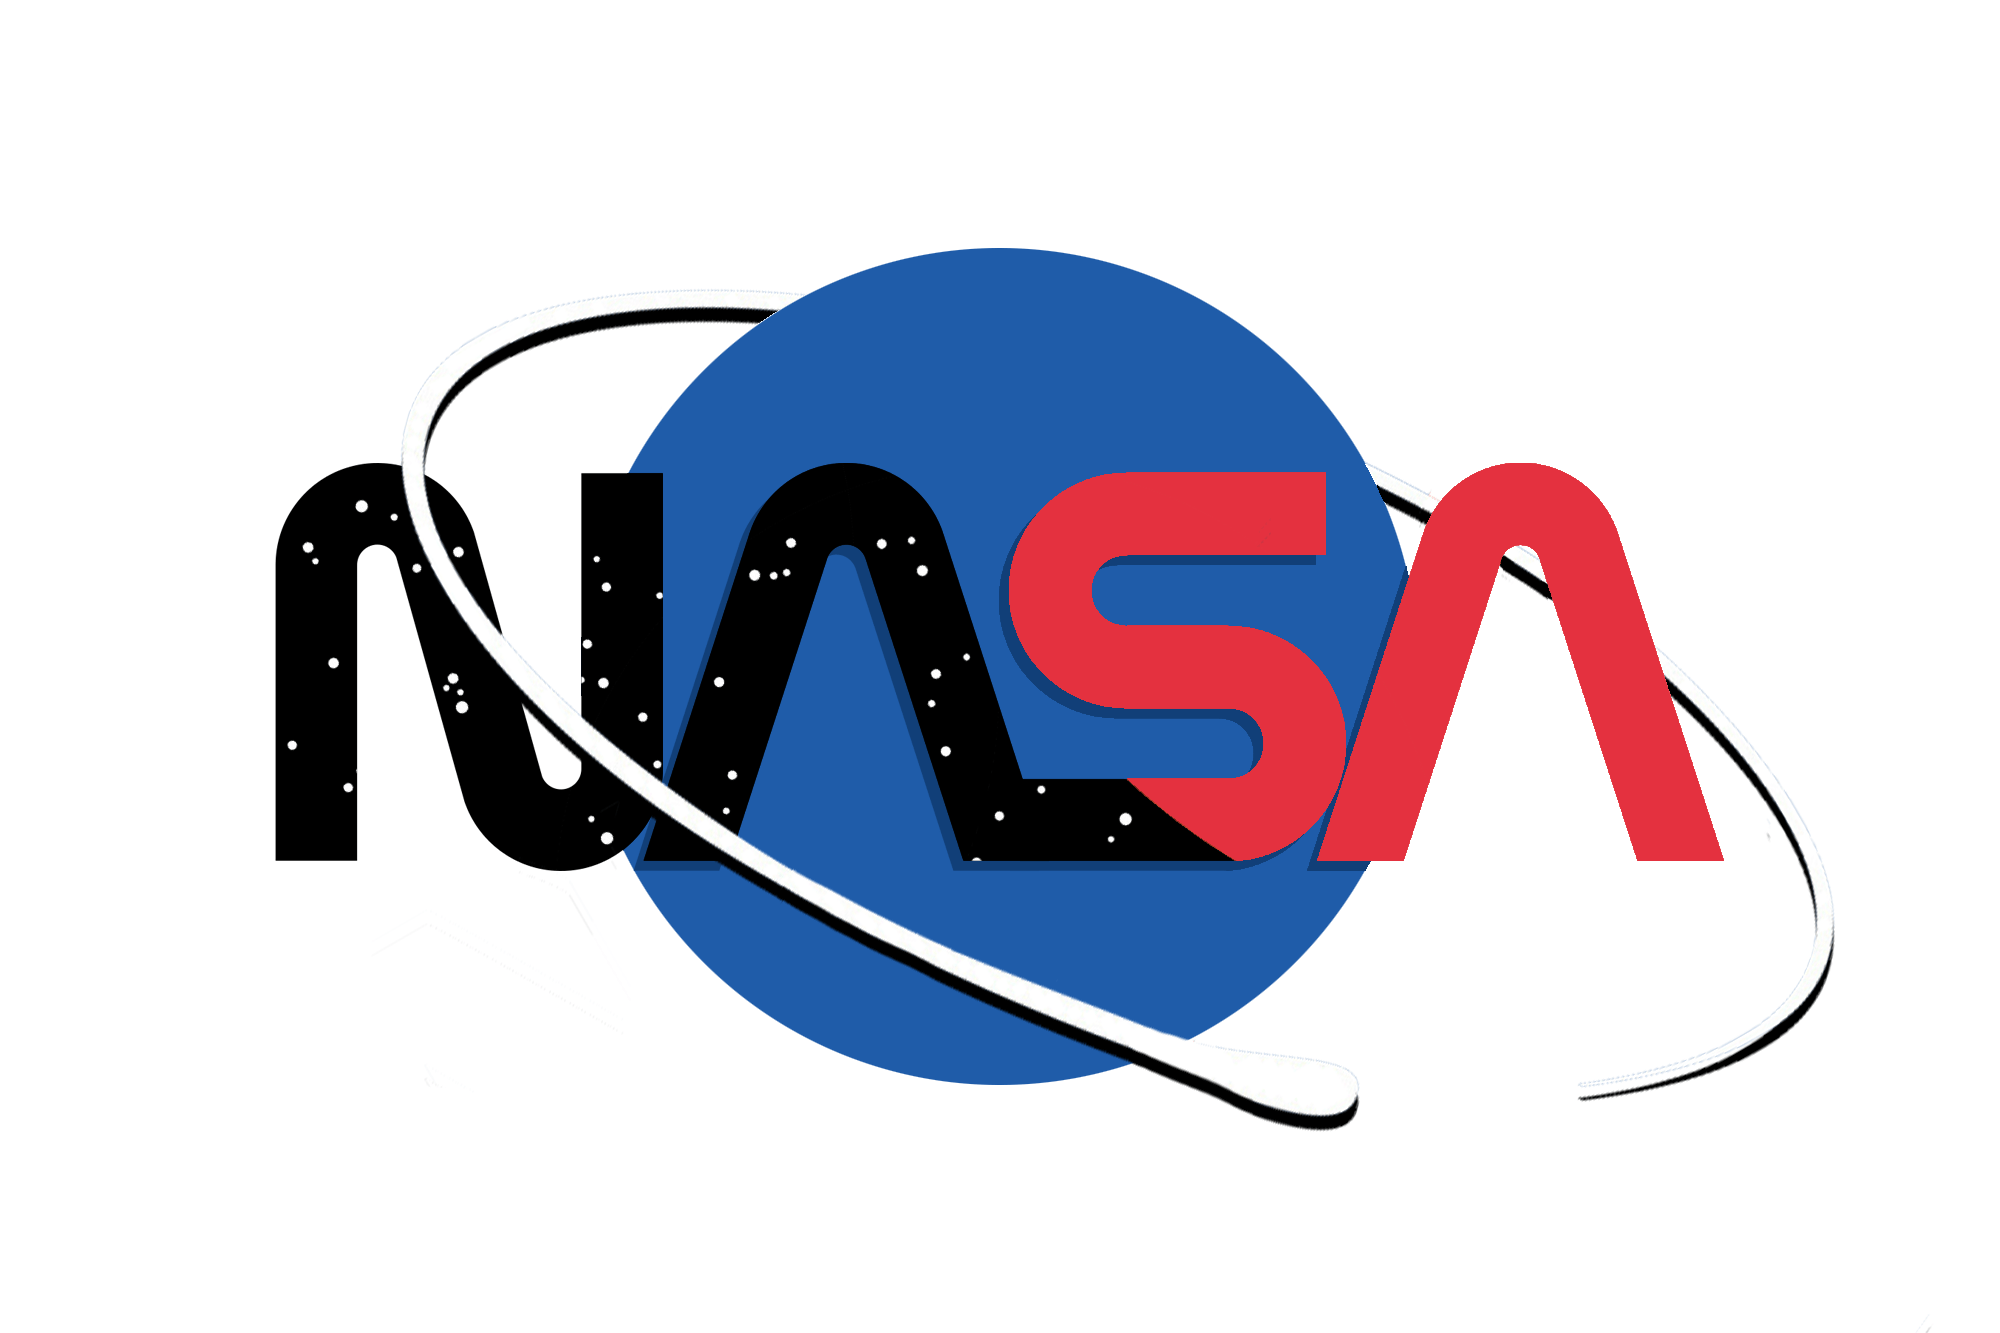 NASA Logo - My design for a modern NASA logo